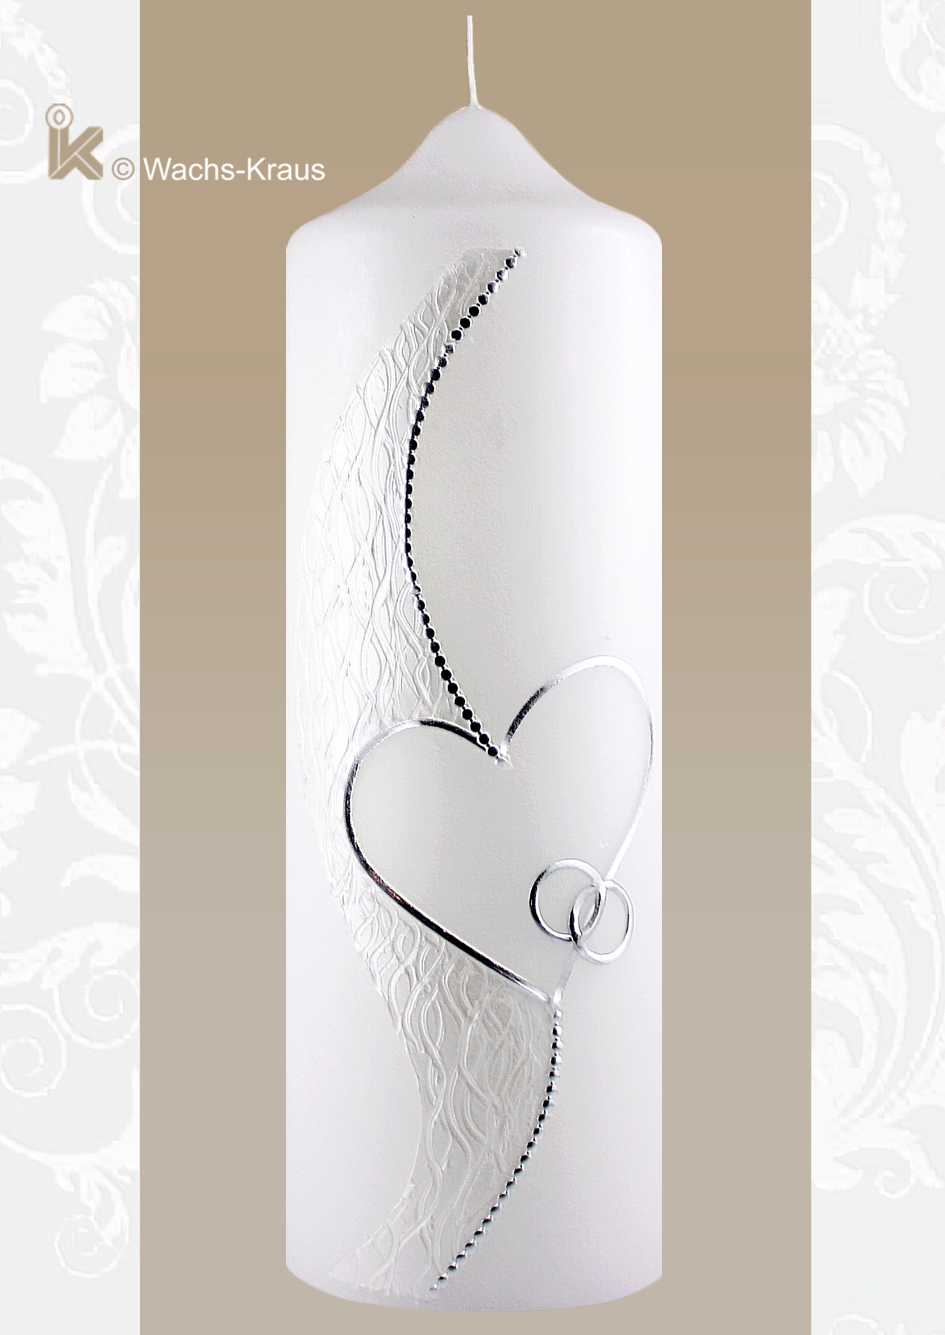 Perlmutt weiß und Silber. Elegante Hochzeitskerze mit der Strukturwachsplatte, der silbernen Verzierung und den Ringen.